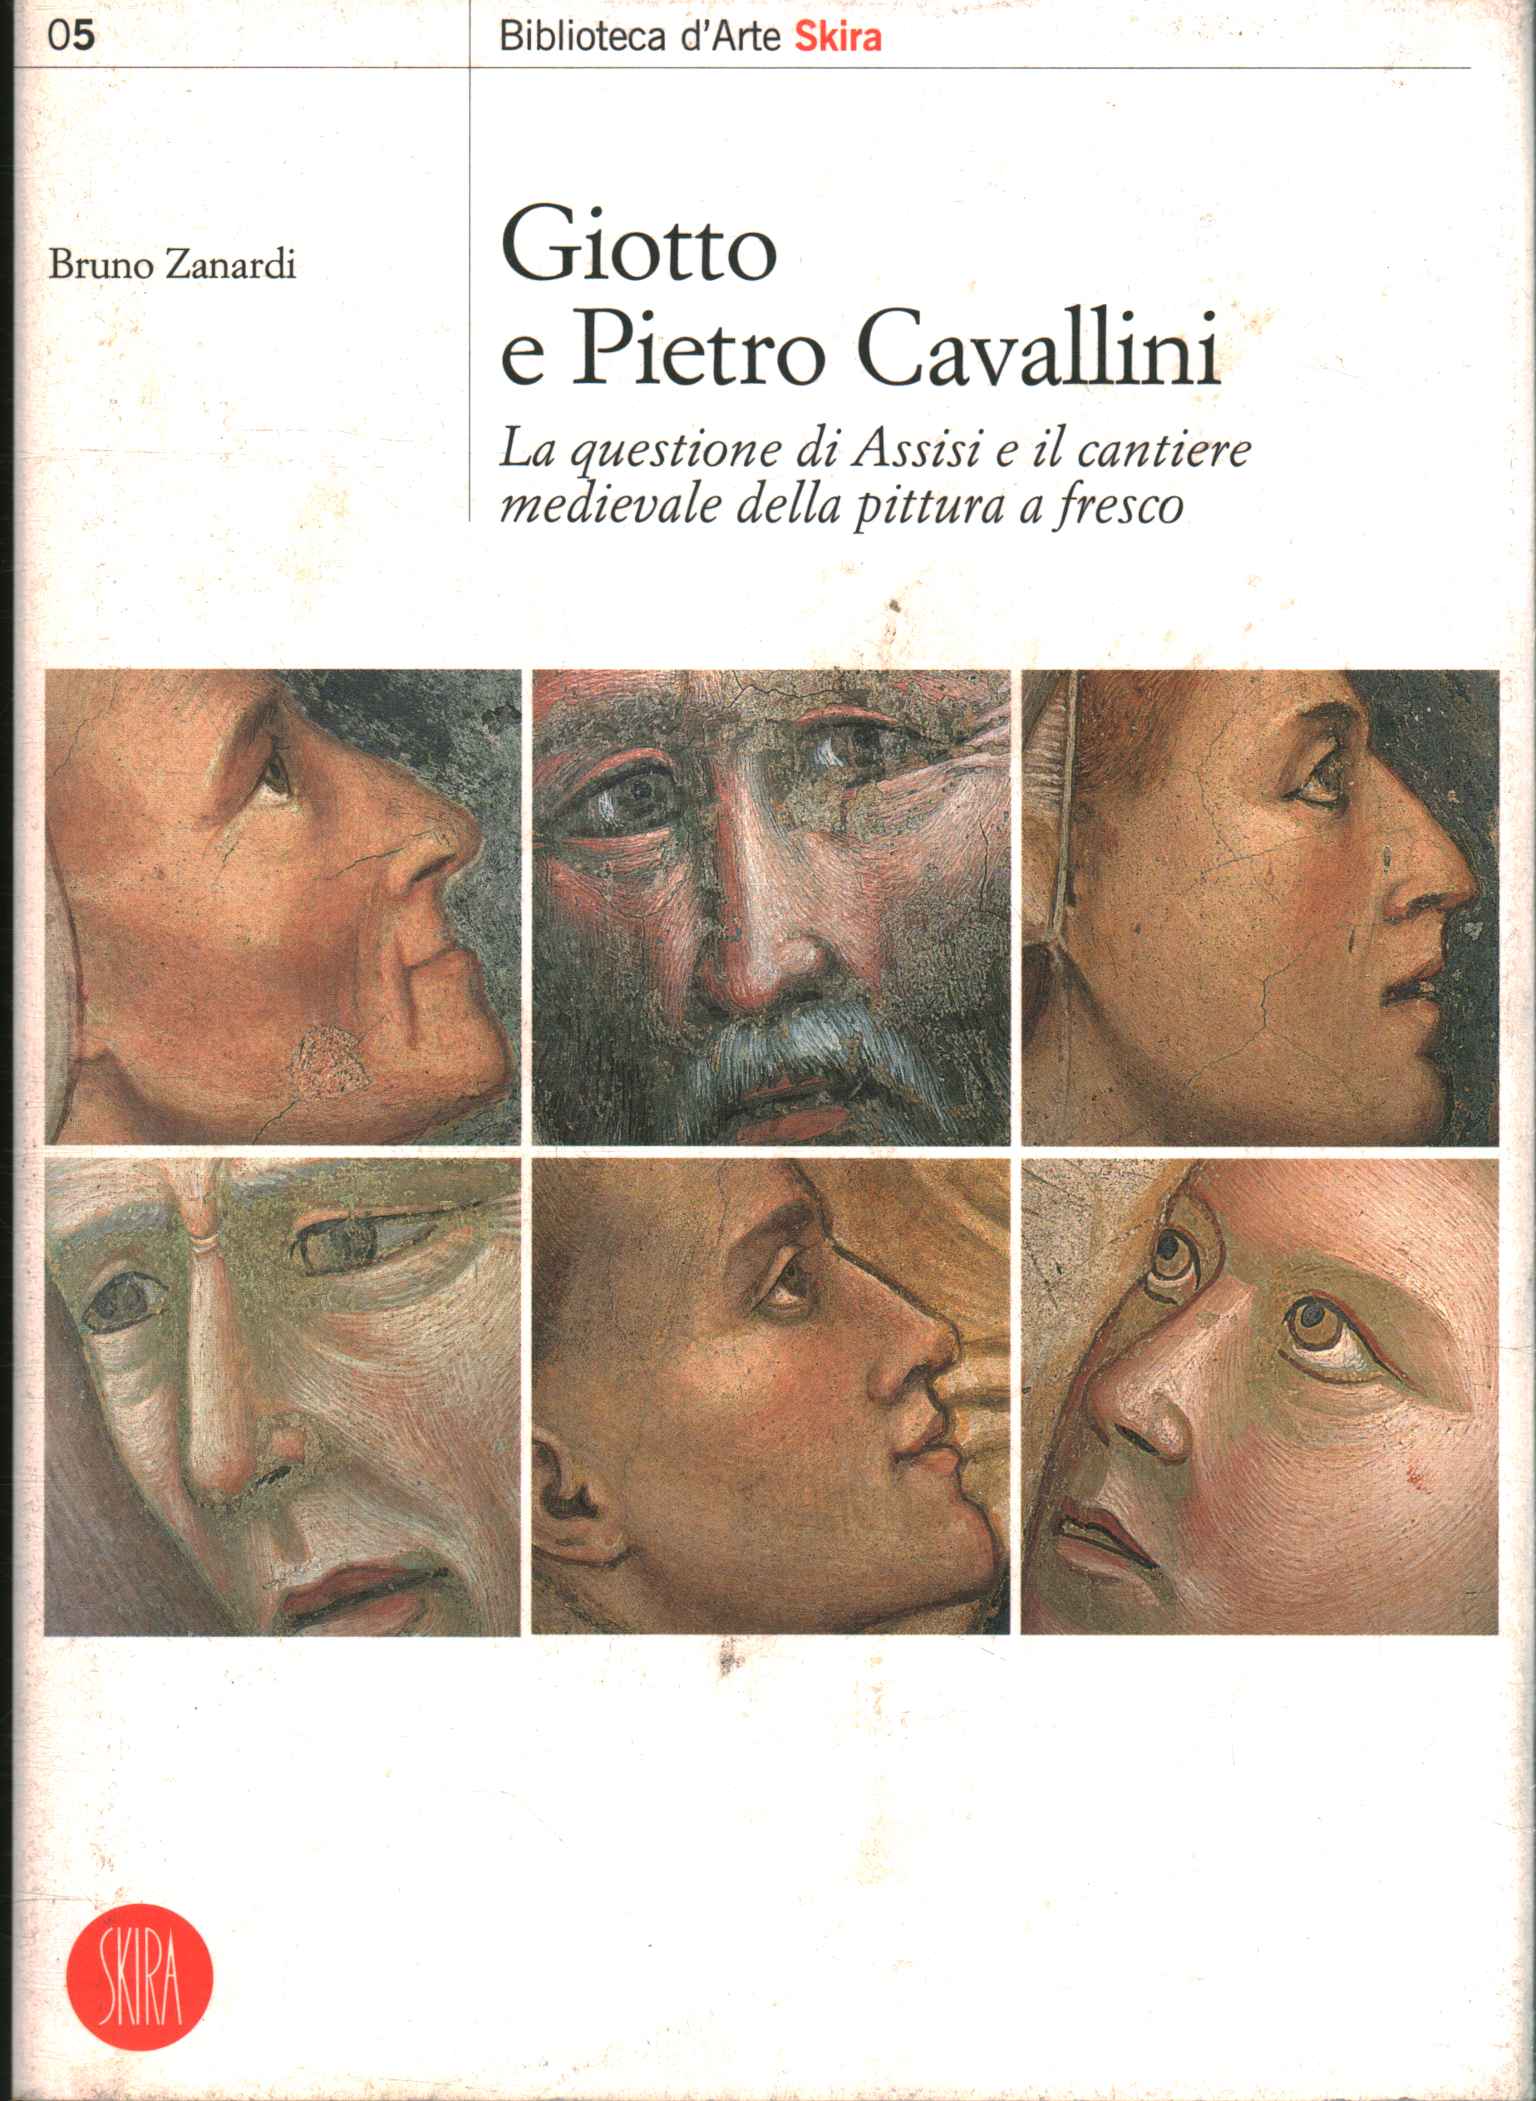 Giotto und Pietro Cavallini